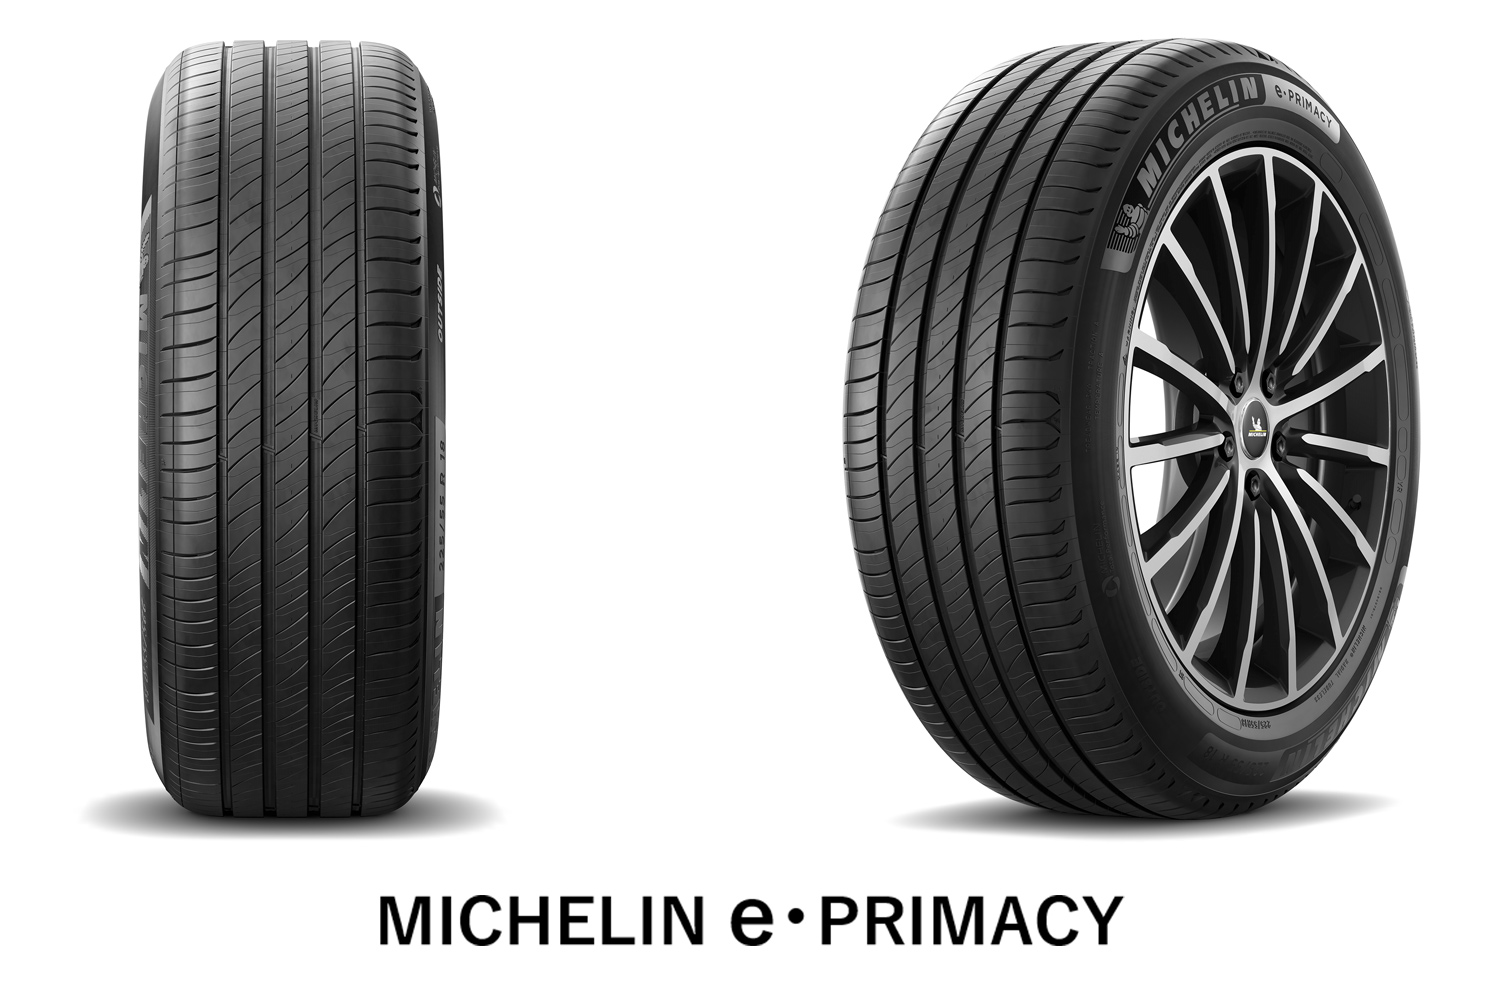 ミシュラン Eプライマシー 225 4本セット プレミアム 45R21 低燃費 S1 21インチ e-PRIMACY MICHELIN サマータイヤ  TOY